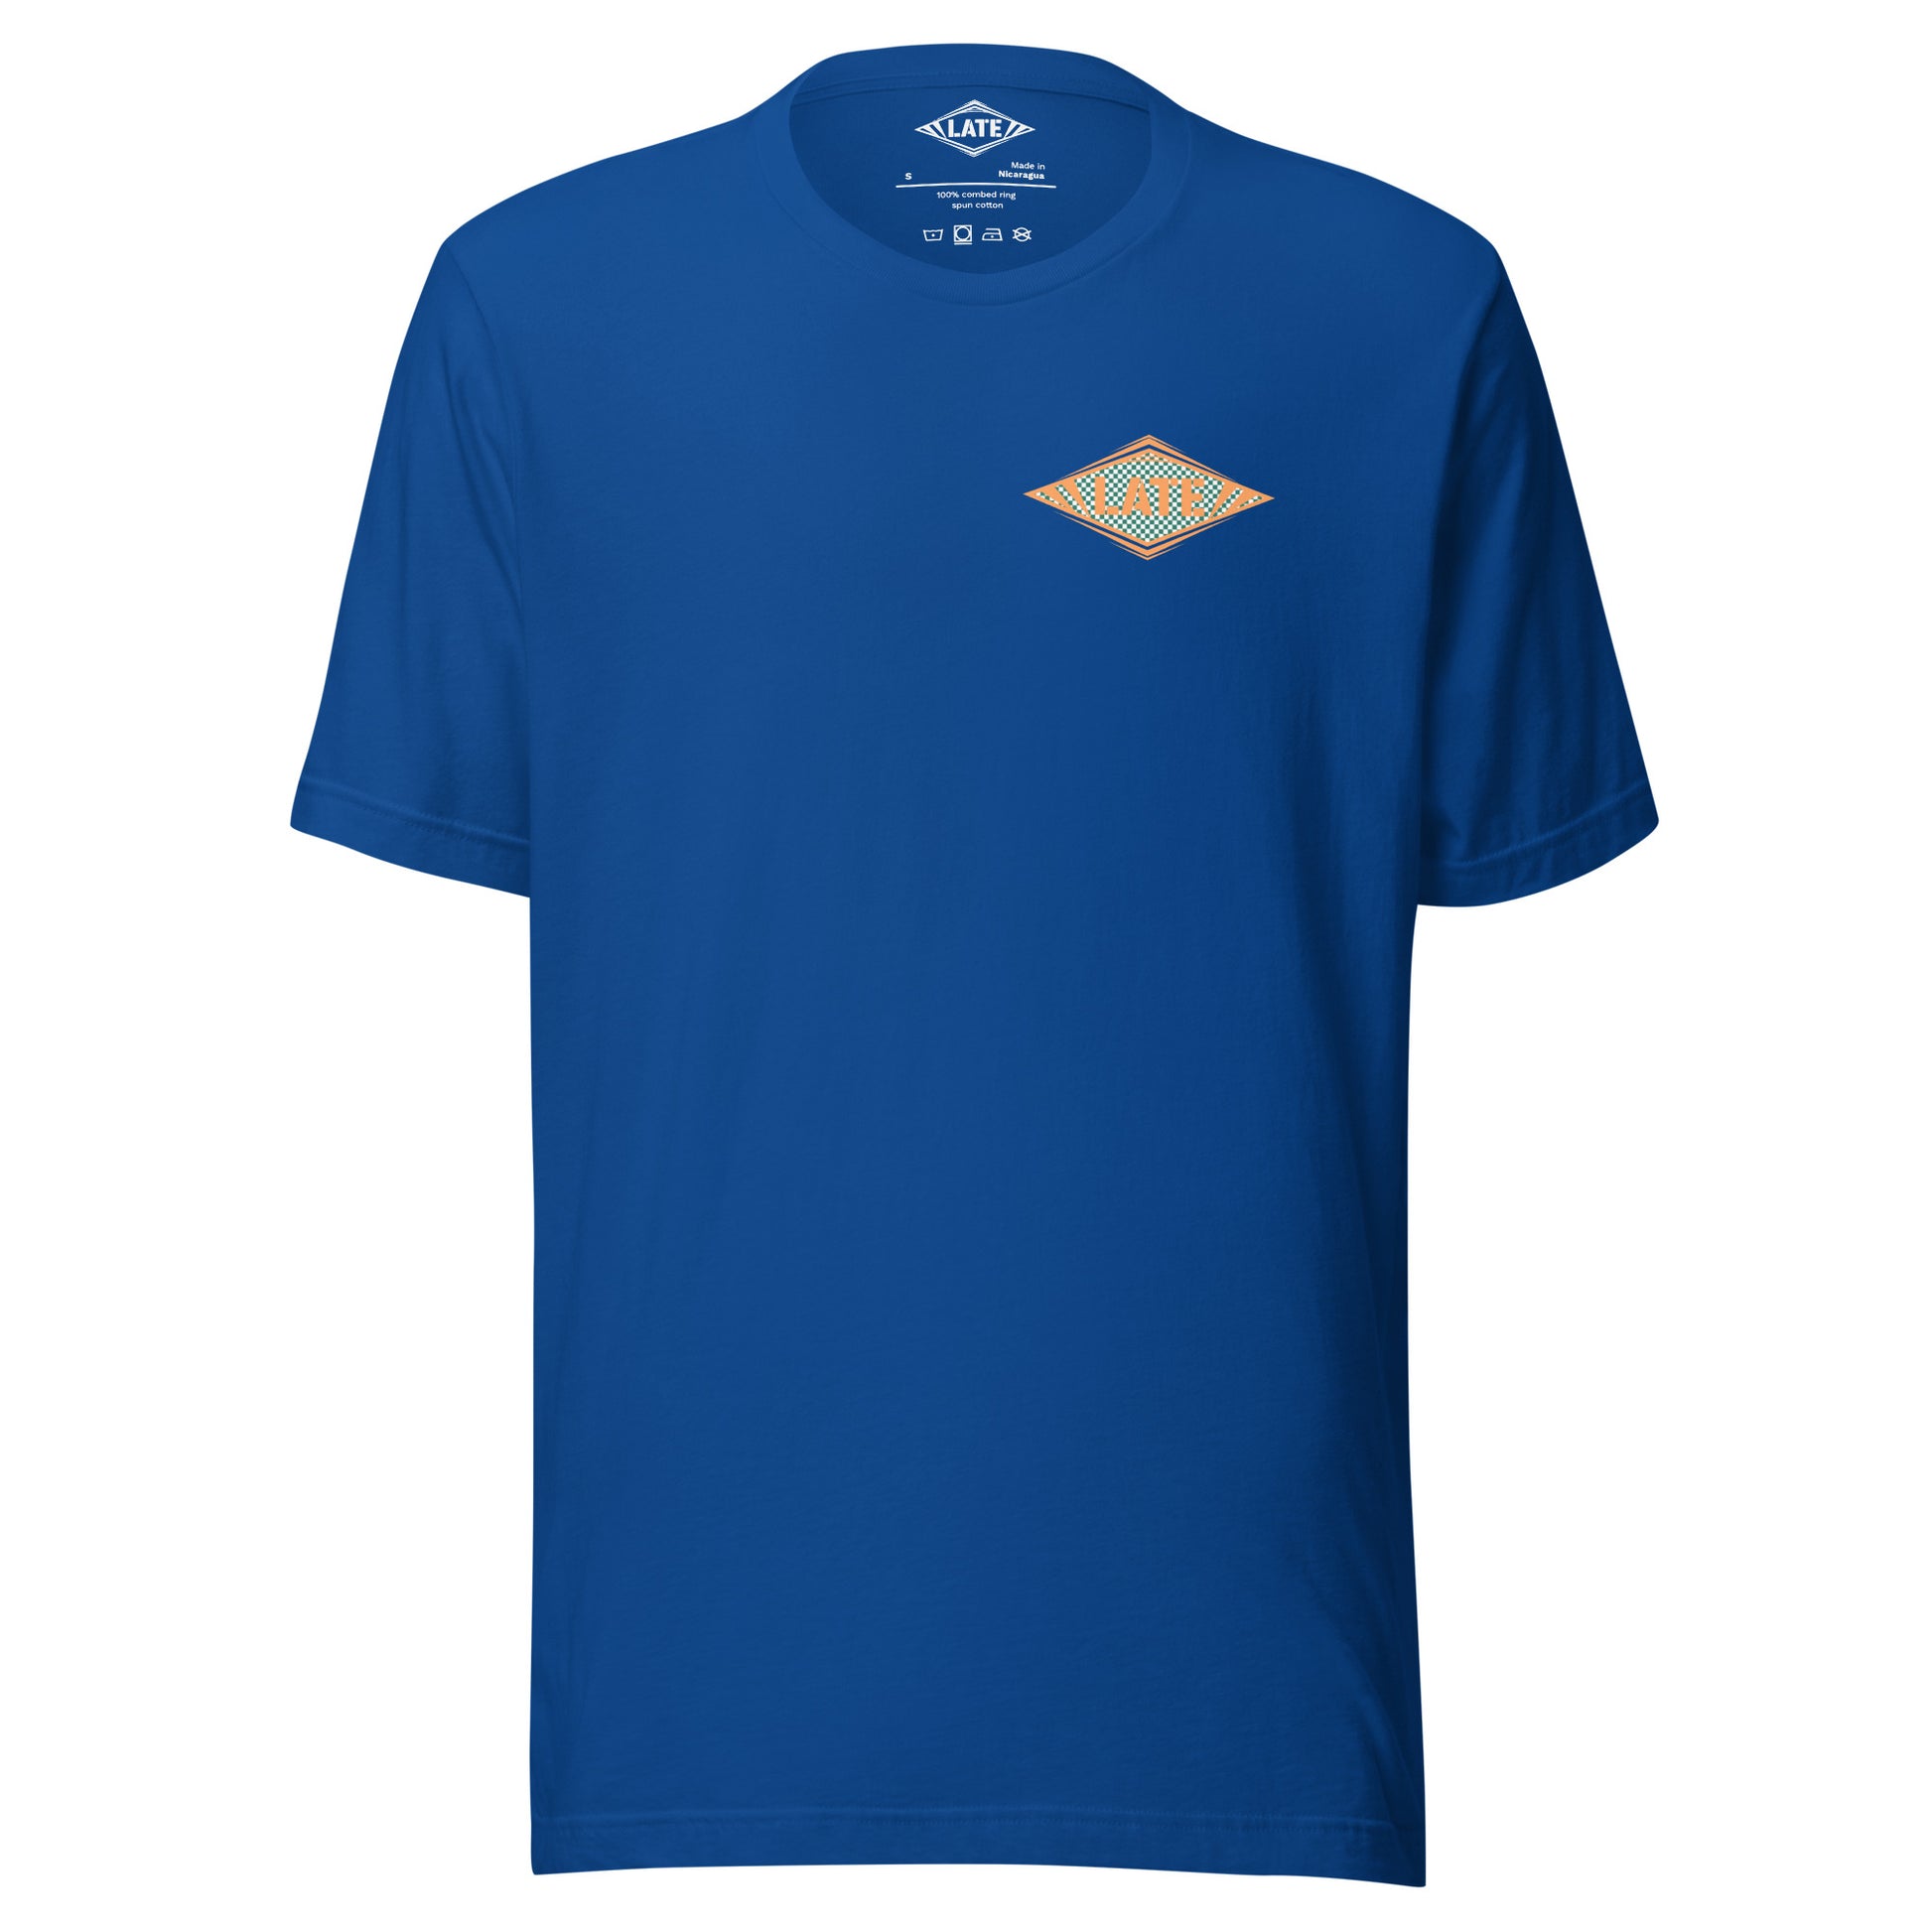 T-Shirt Shred It skateboard style Vans logo Late à carreaux. T-Shirt unisex de face couleur bleu royal